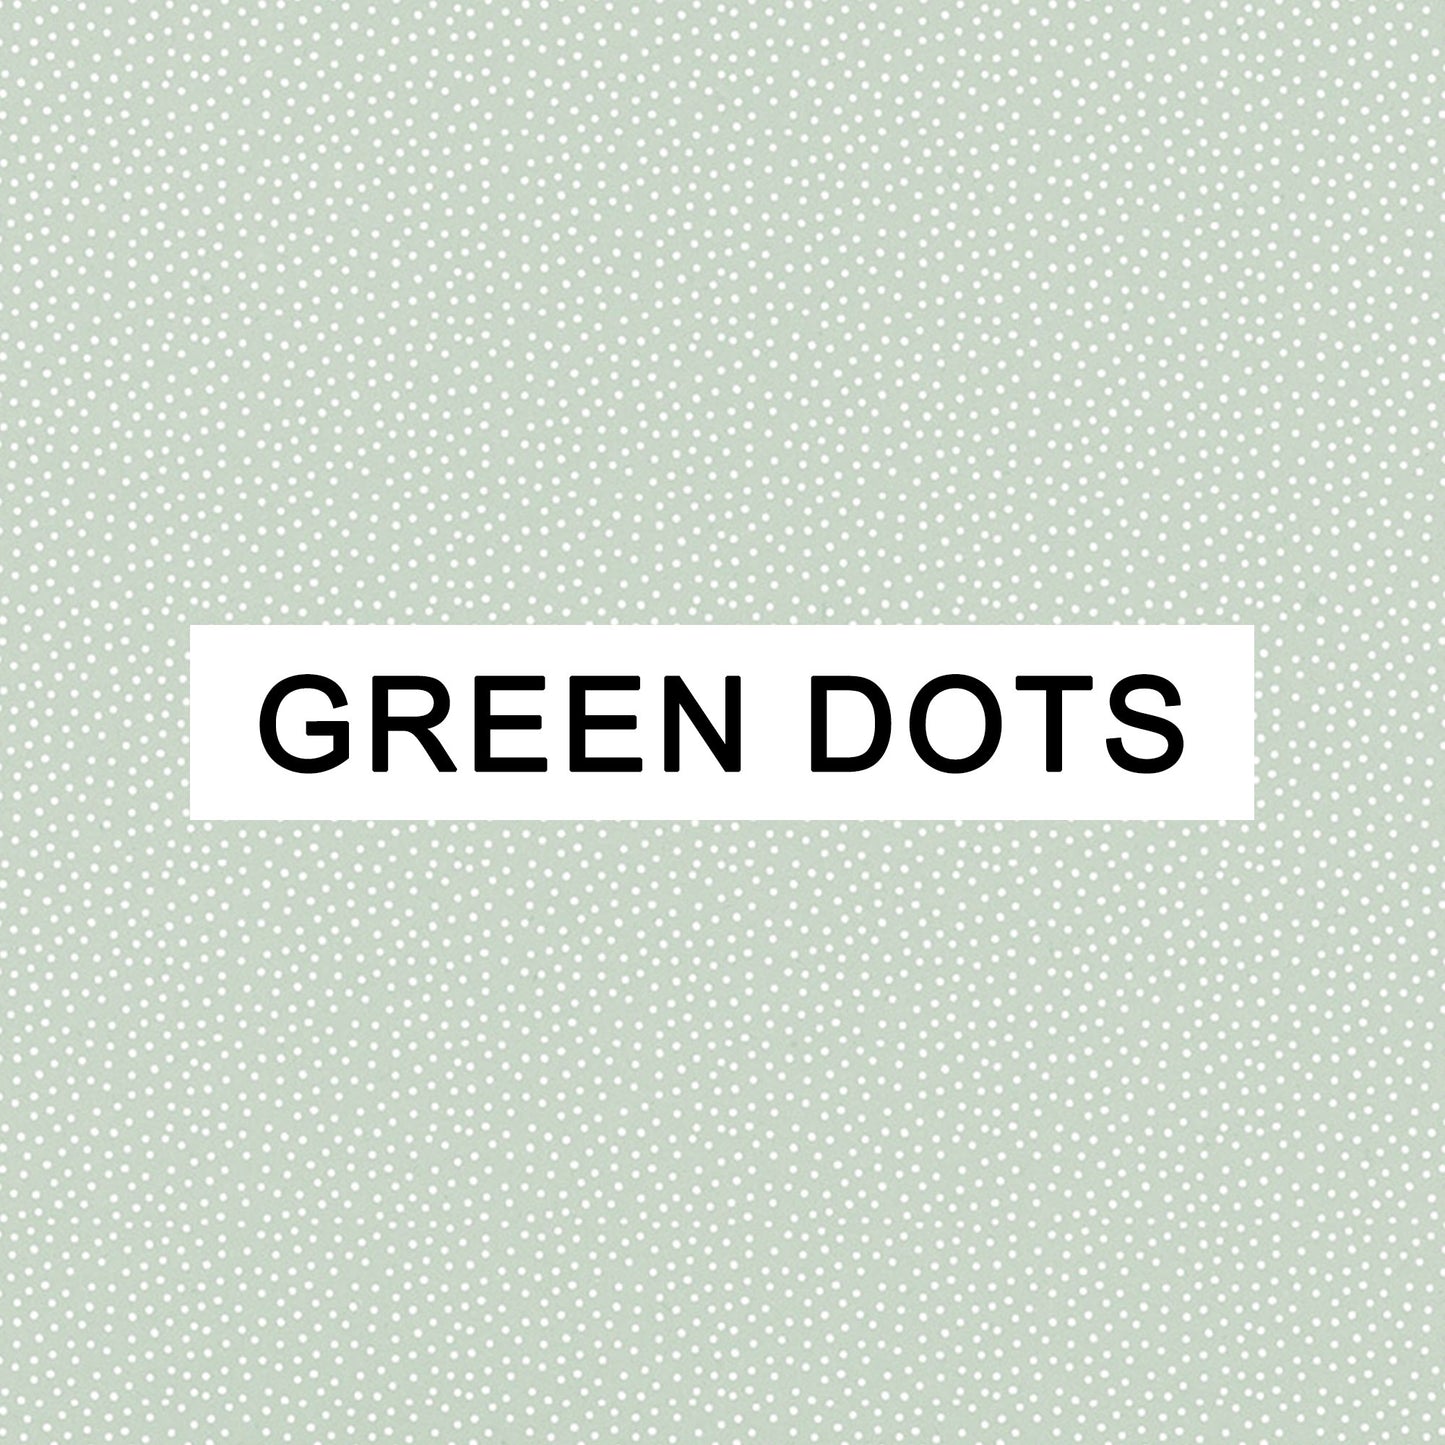 Green Dots - Birth Counter